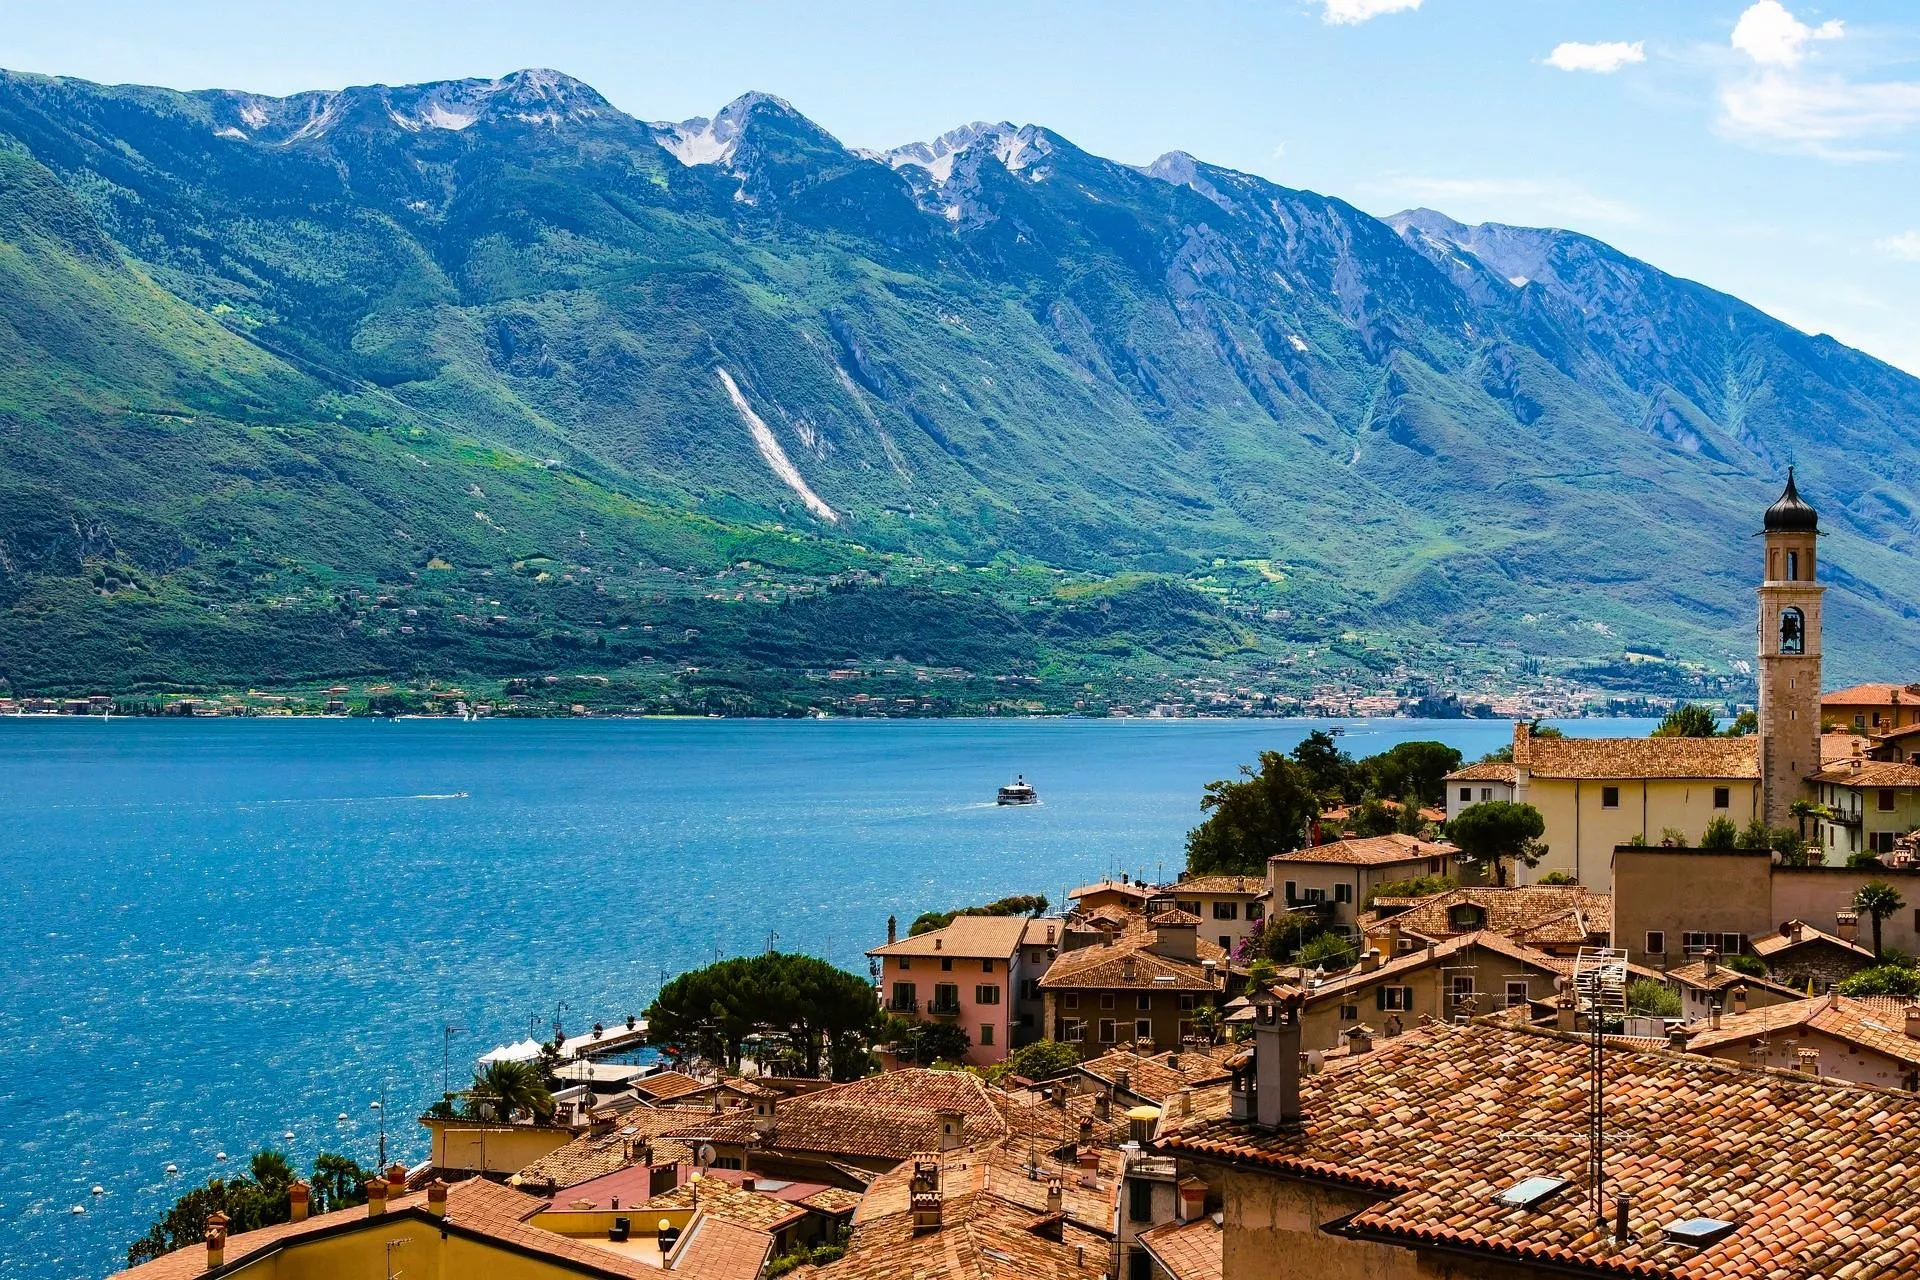 Explore the largest Italian lake